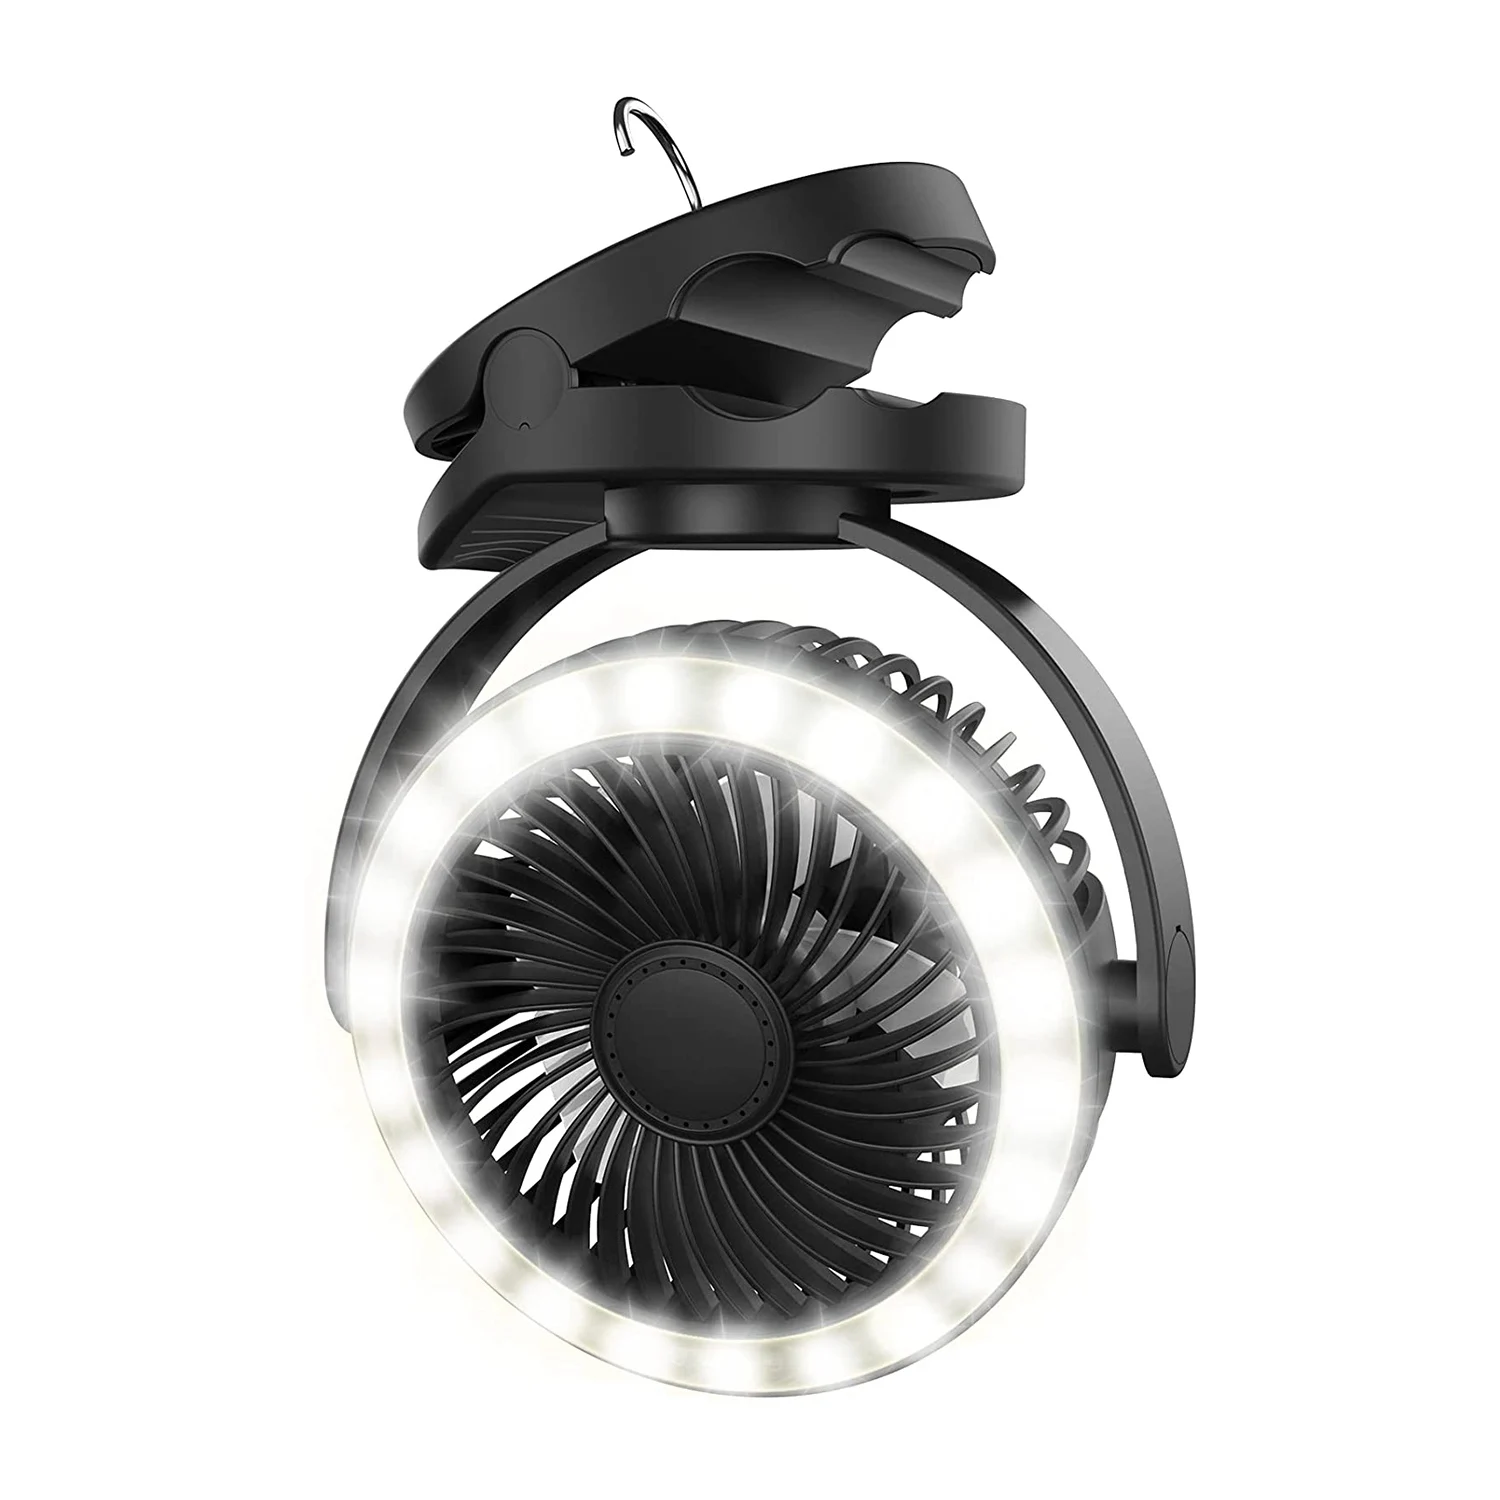 

Вентилятор-фонарь для кемпинга на 10000 мА · ч, вентилятор с 4 скоростями, вентилятор на батарейках, Портативный Персональный вентилятор, вращение на 360 °